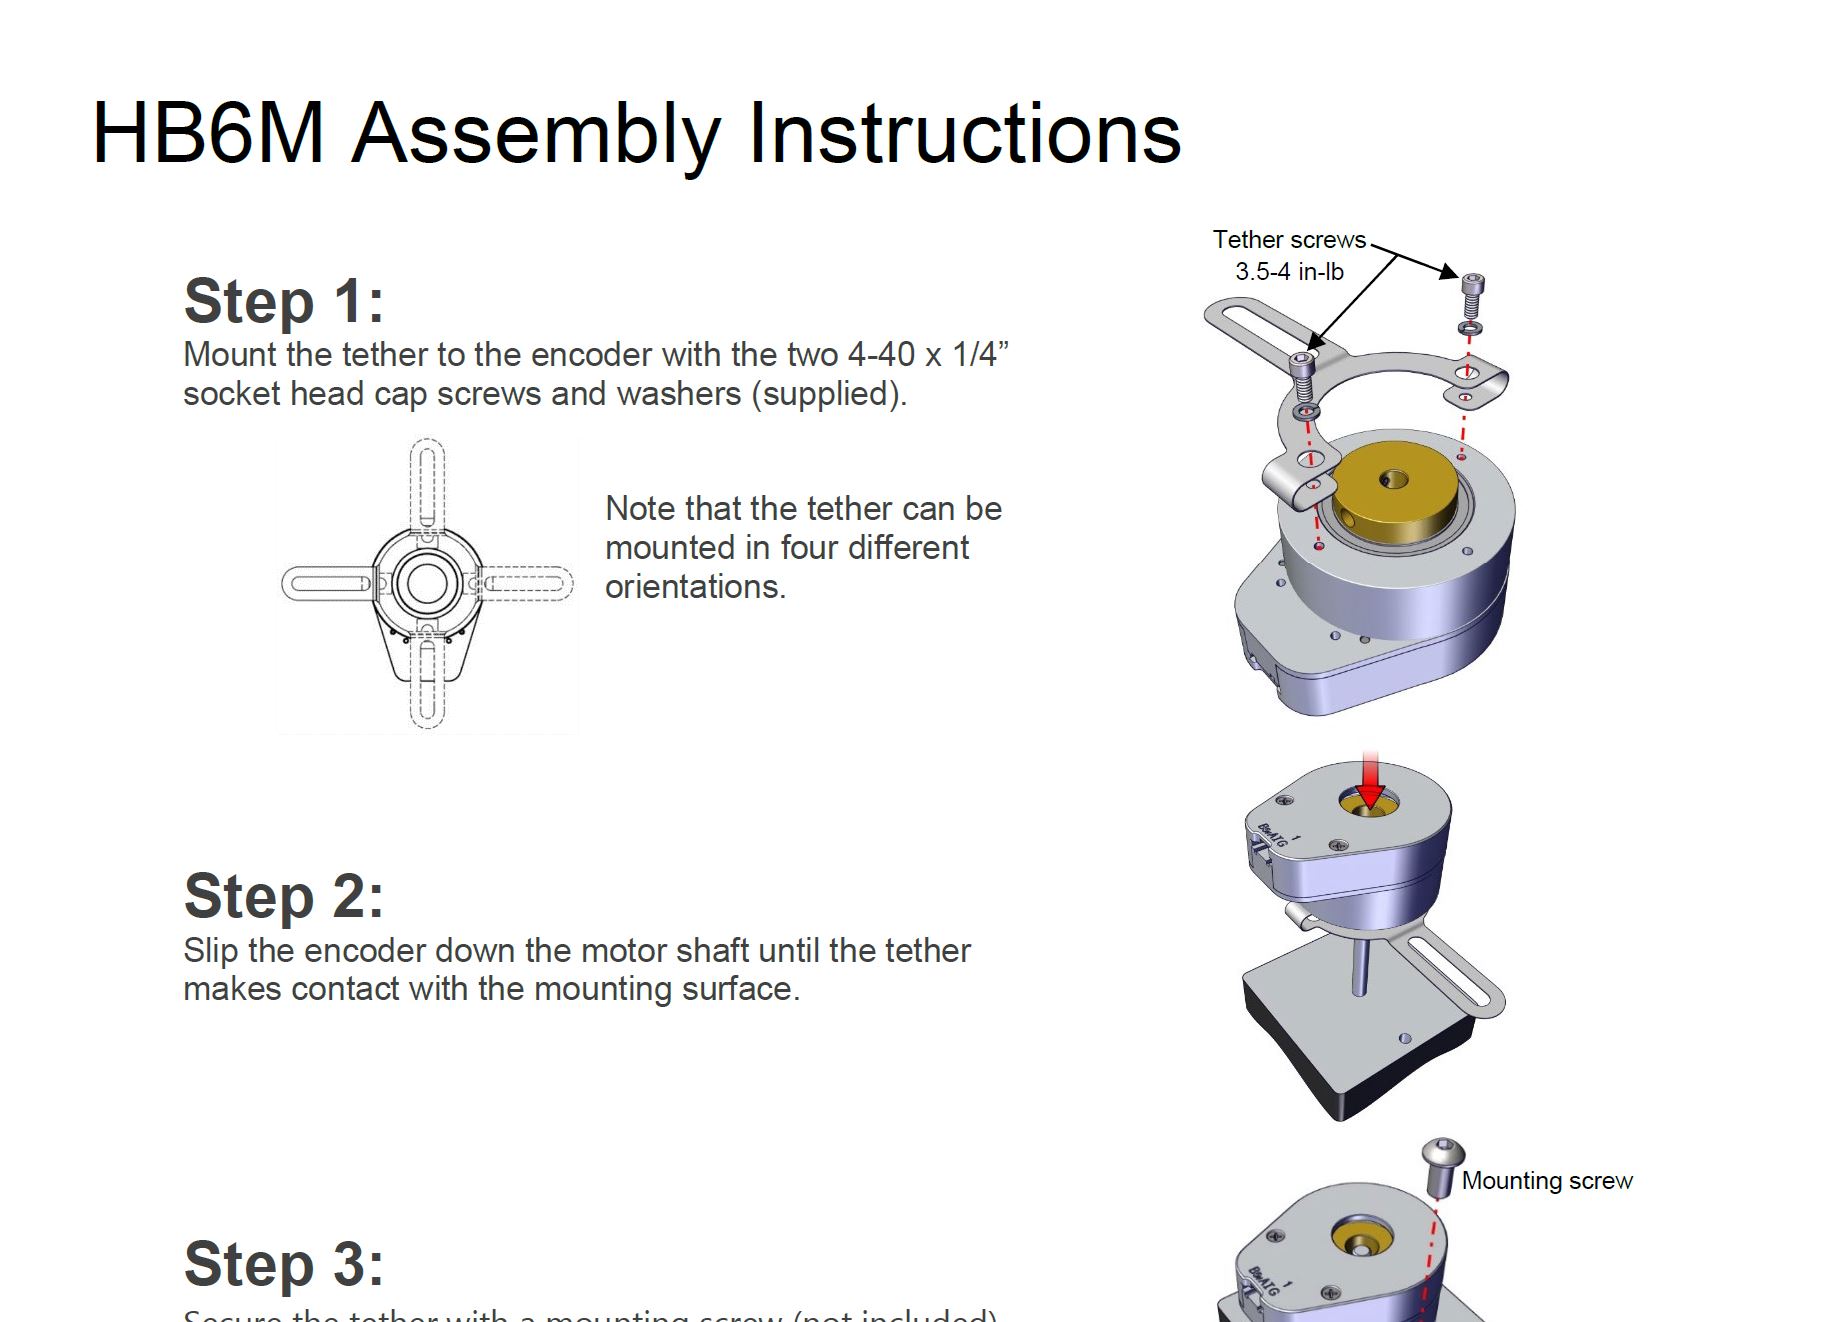 Umbraco.Cms.Web.Common.PublishedModels.ProductSliderAssemblyInstructions..Name Assembly Instructions